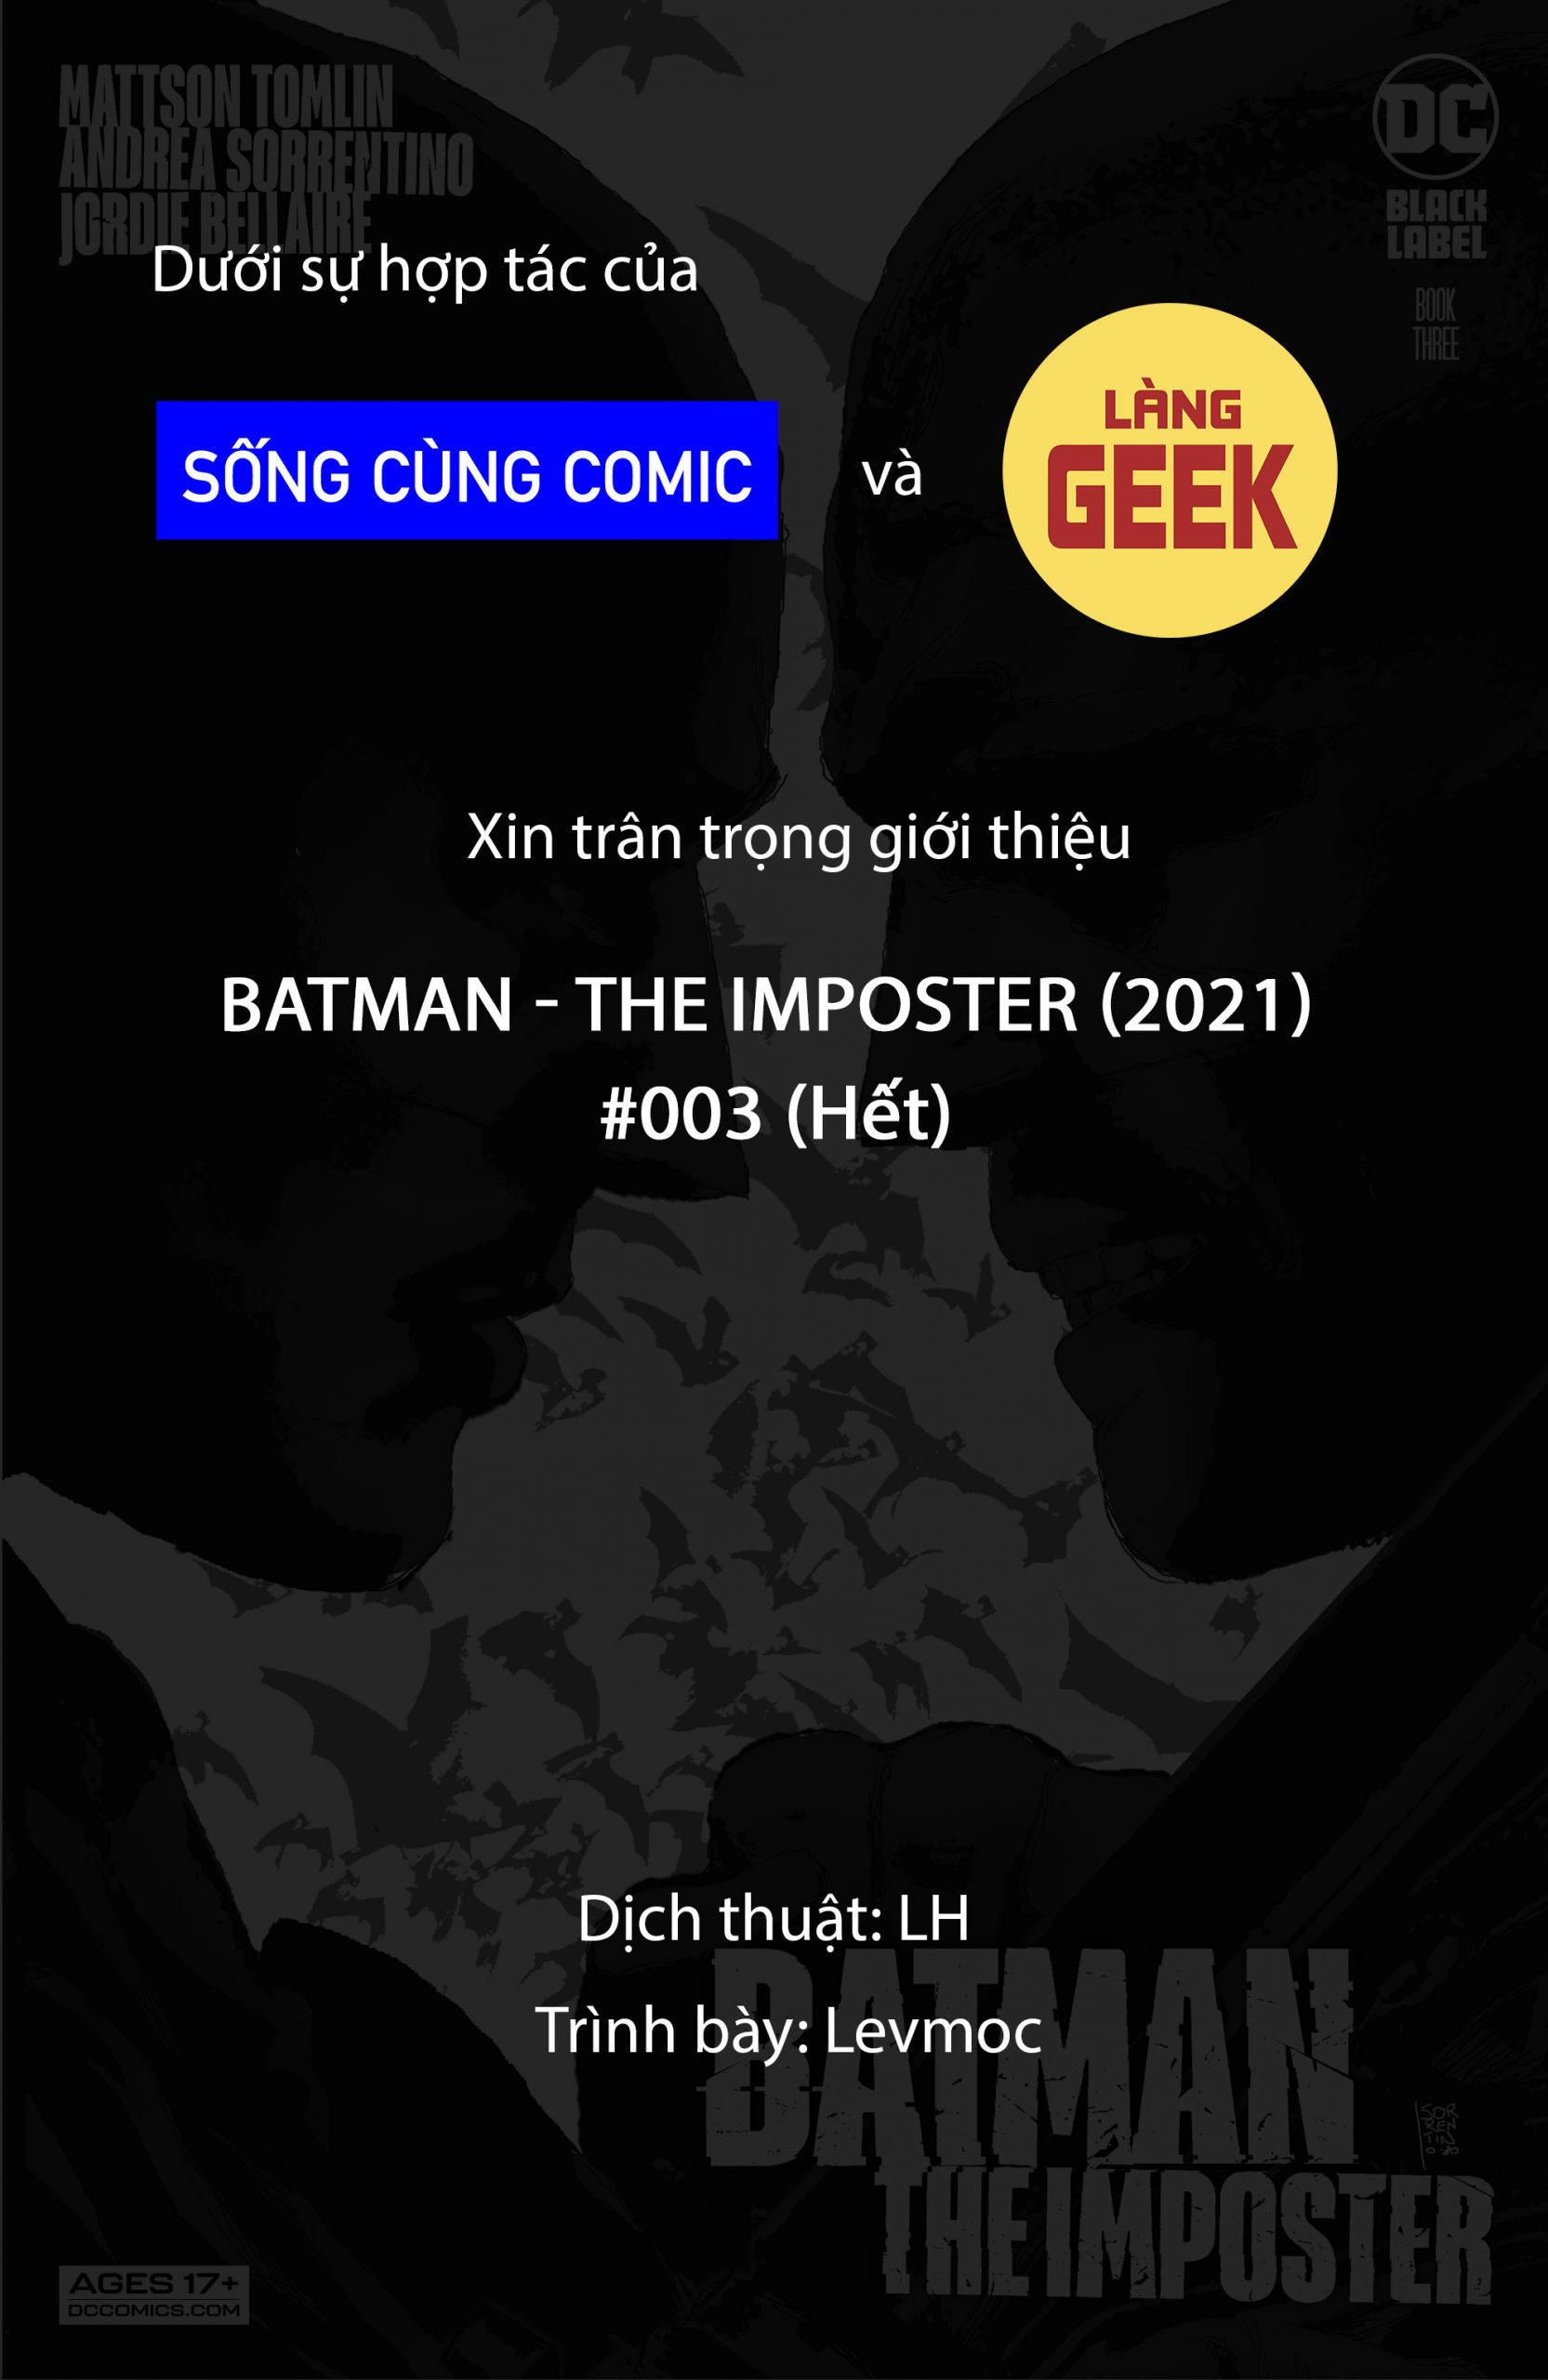 https://langgeek.net/wp-content/uploads/2021/12/Batman-The-Imposter-2021-003-001-scaled.jpg